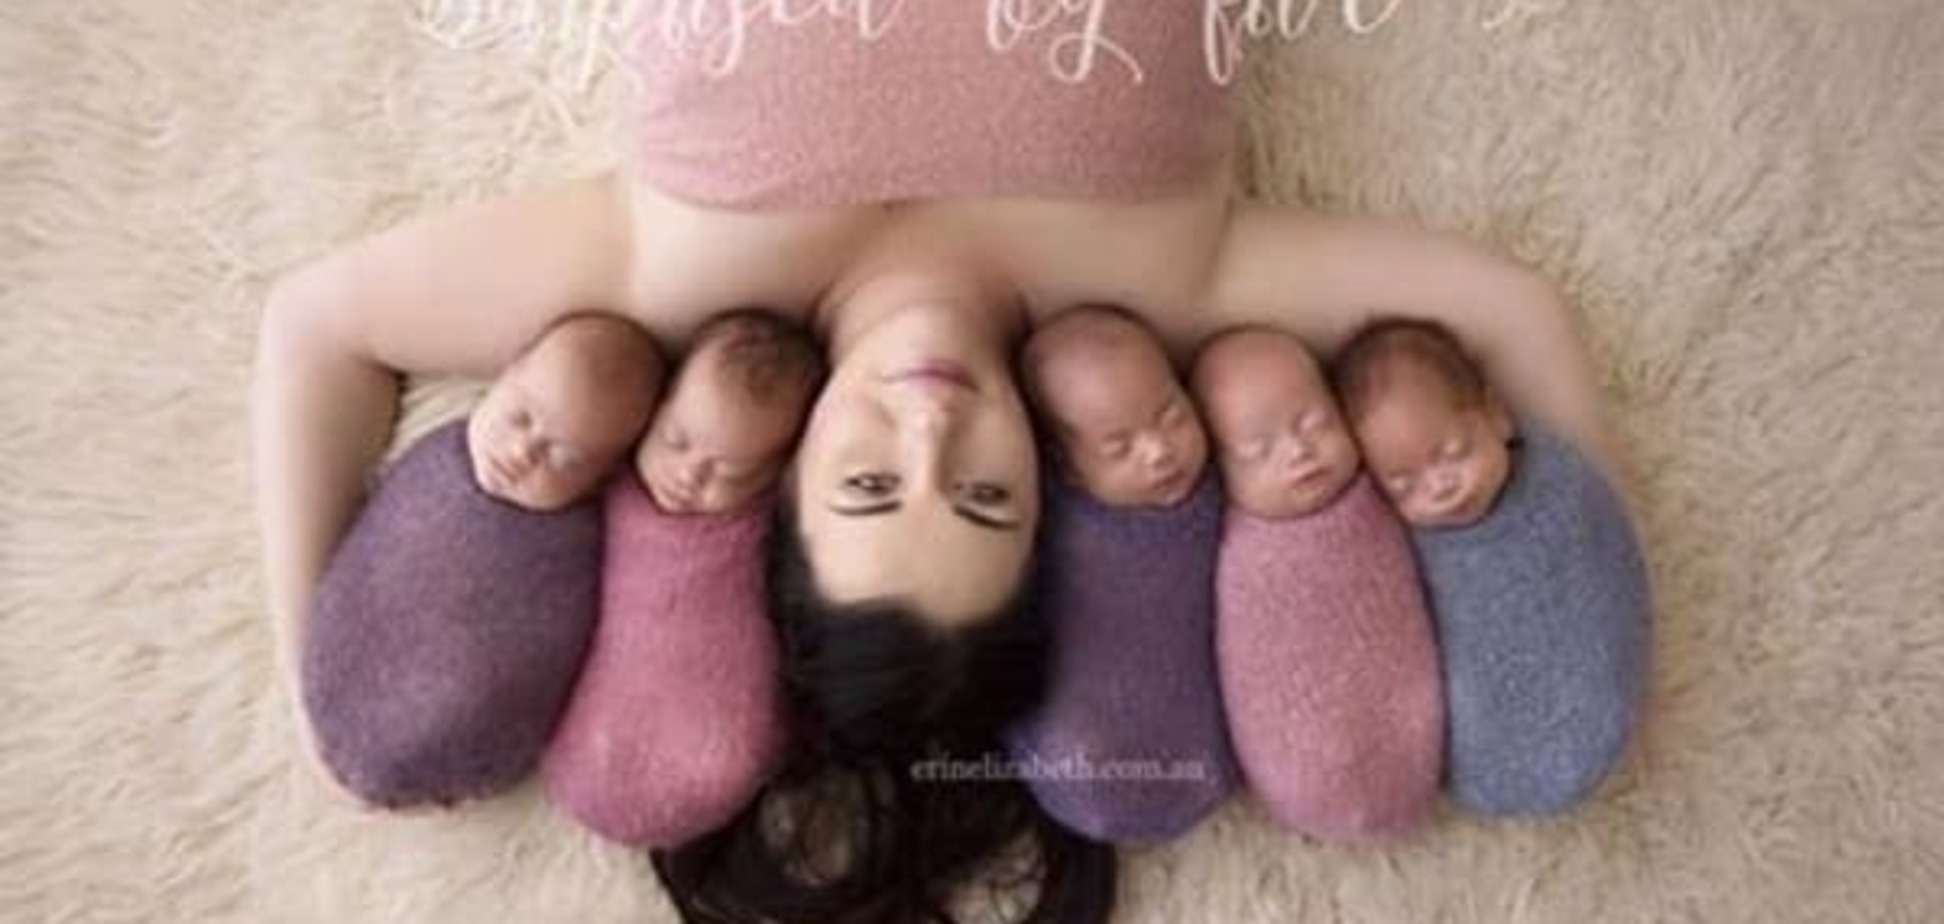 Австралийка Ким Тукки рассказала о том, как это быть мамой пятерняшек